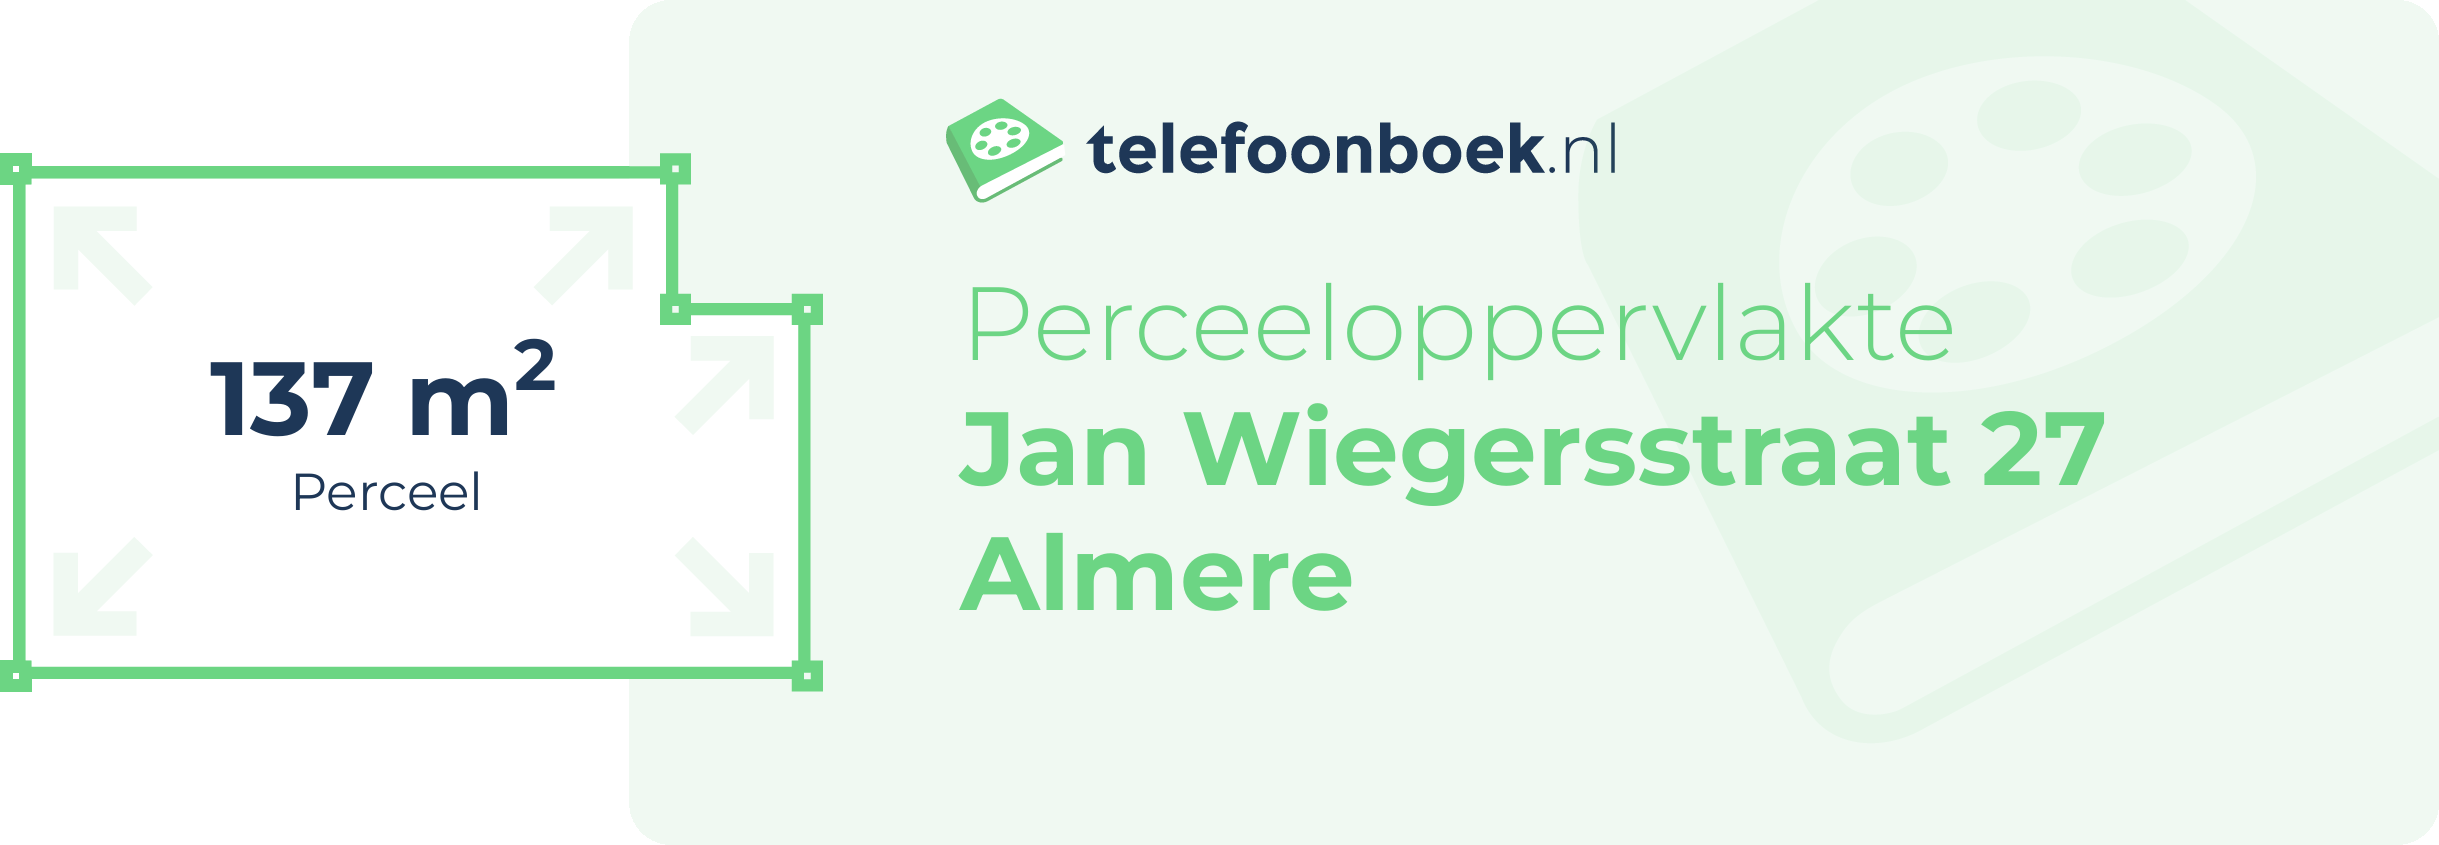 Perceeloppervlakte Jan Wiegersstraat 27 Almere